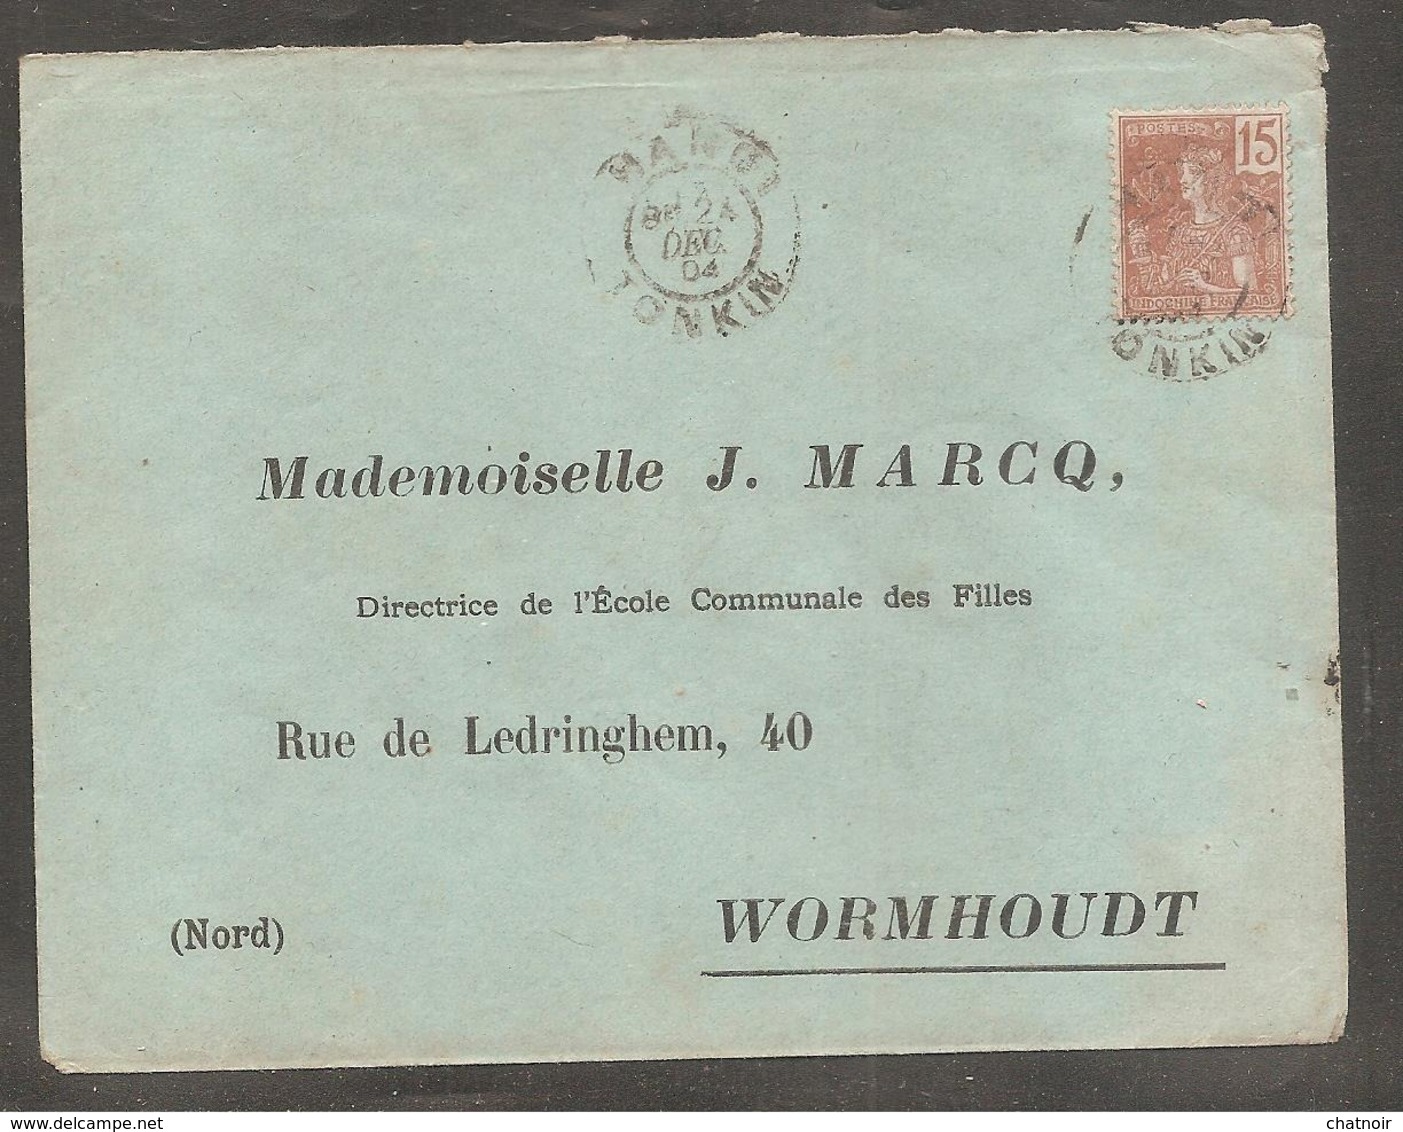 Enveloppe  Avec Timbre Indochine Francaise  Oblit  HANOI  TONKIN  1904  Pour  Wormhoudt   Nord - Autres - Asie